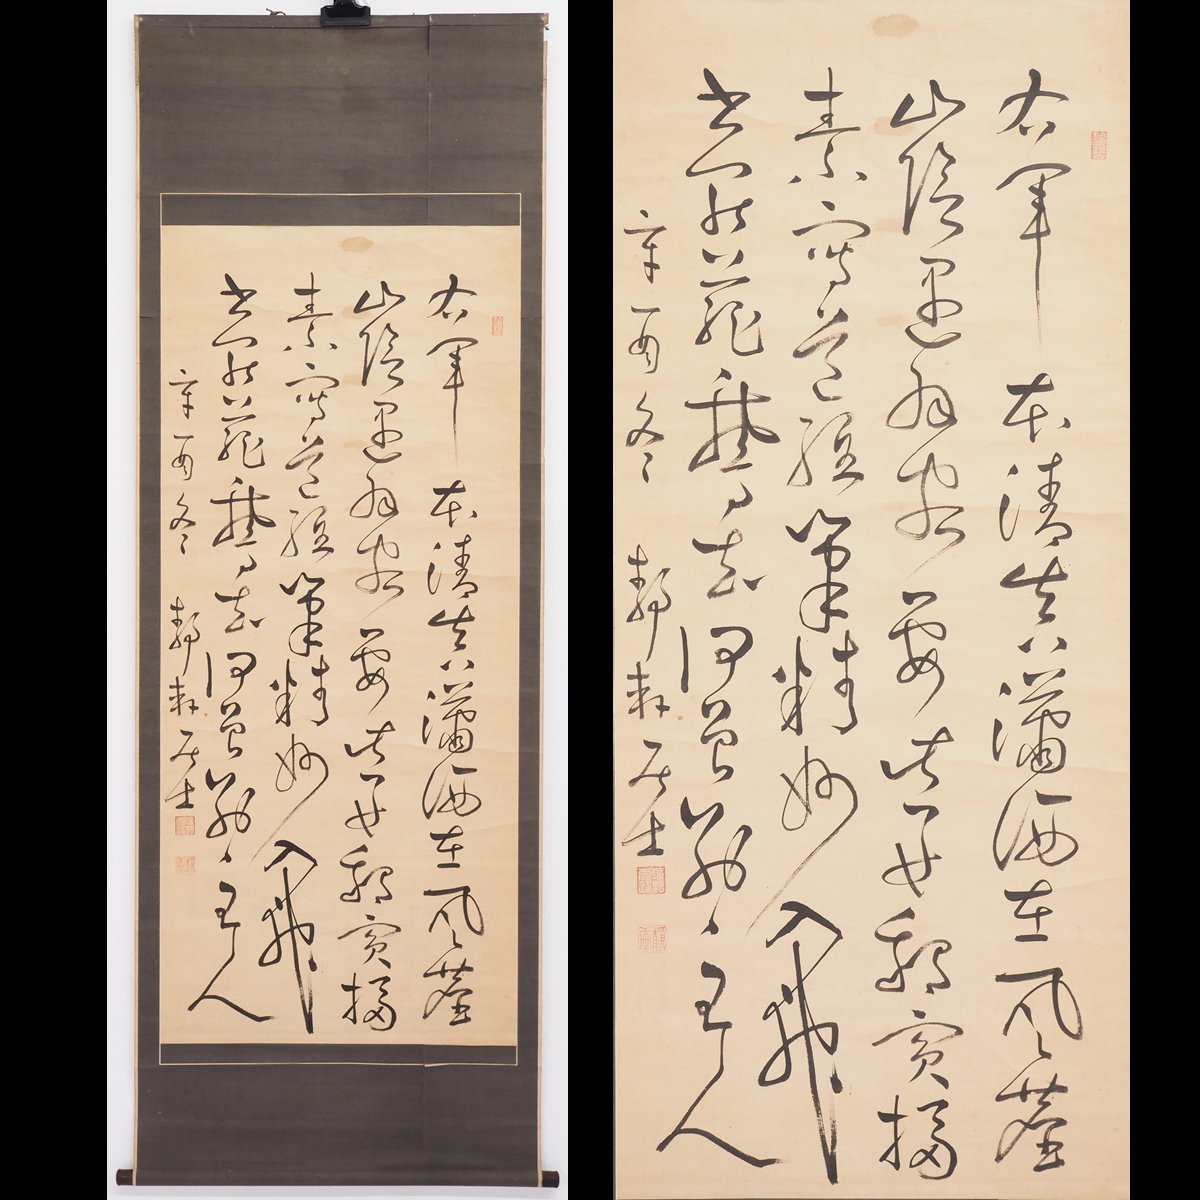 [Auténtico] [Watarikan] [Jono Seiken] 14661 Pergamino colgante, caligrafía, papel, Kumamoto, Higo, kikuchi, inscrito, Obra de arte, libro, pergamino colgante